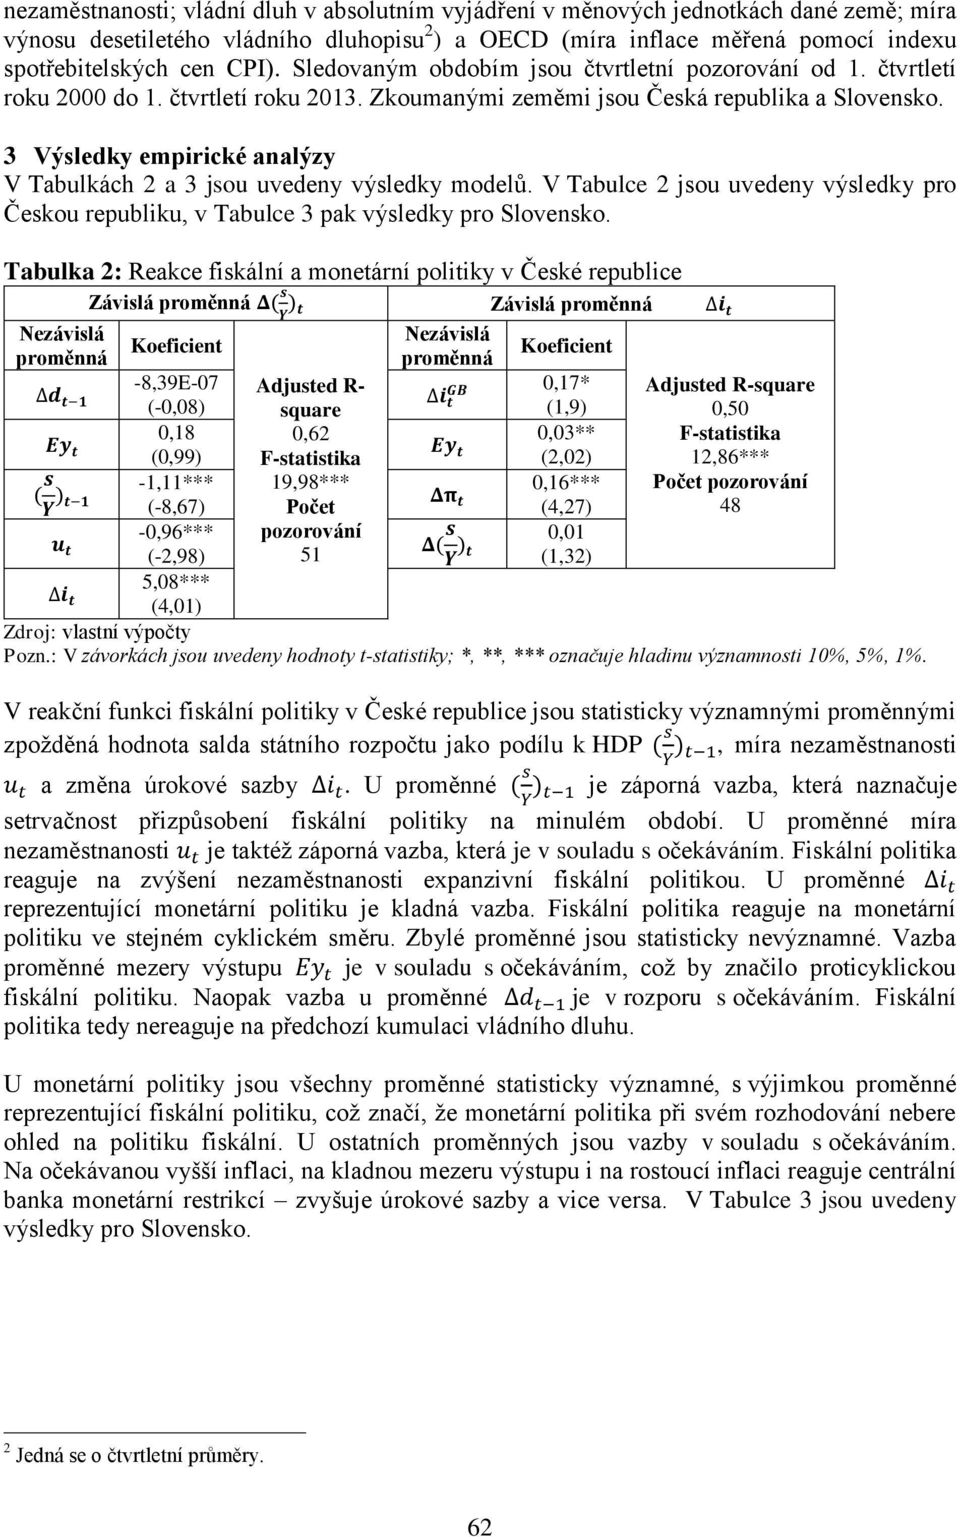 3 Výsledky empirické analýzy V Tabulkách 2 a 3 jsou uvedeny výsledky modelů. V Tabulce 2 jsou uvedeny výsledky pro Českou republiku, v Tabulce 3 pak výsledky pro Slovensko.